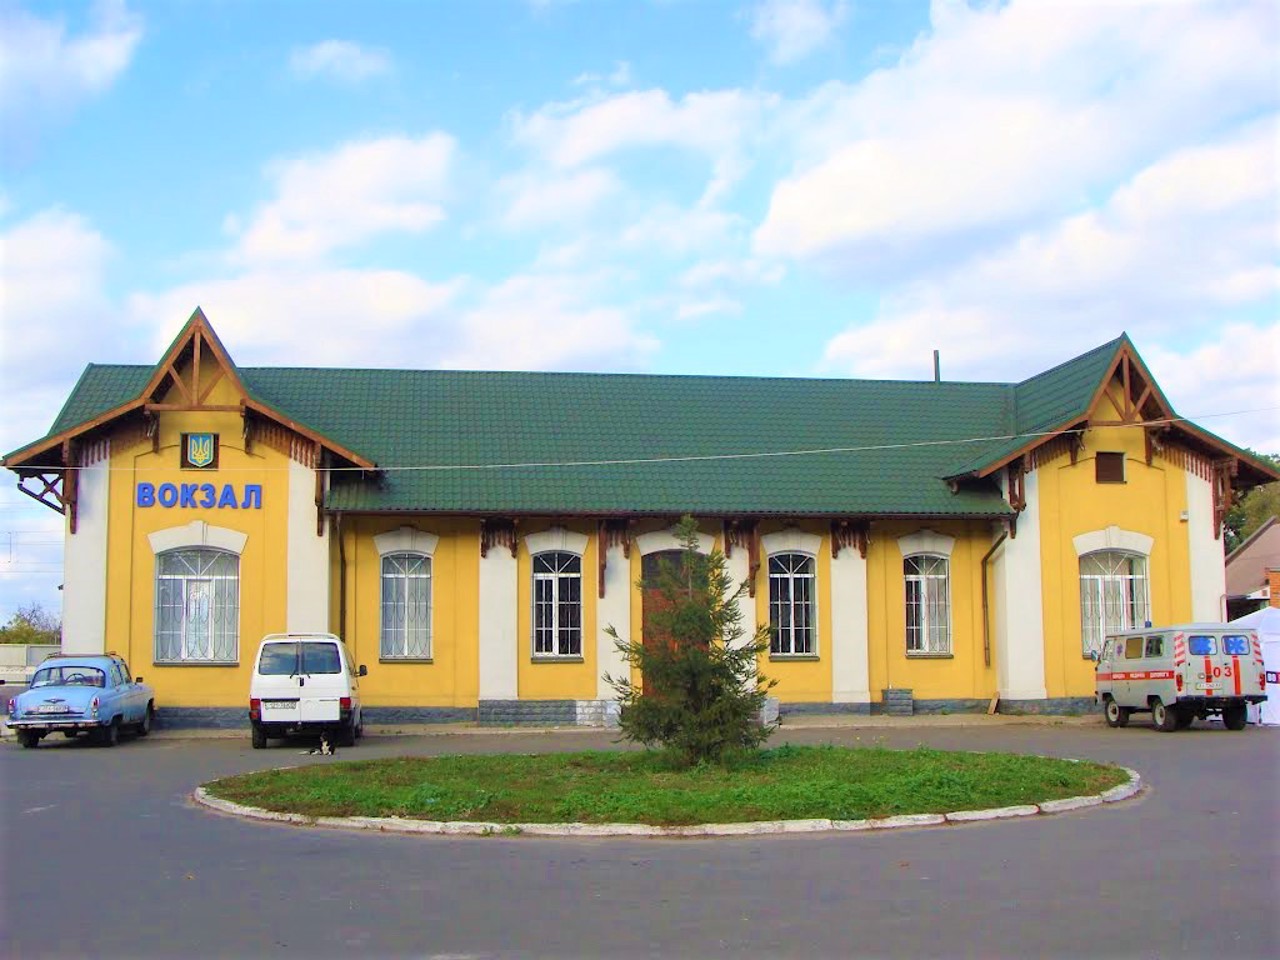 Klavdiievo-Tarasove Village